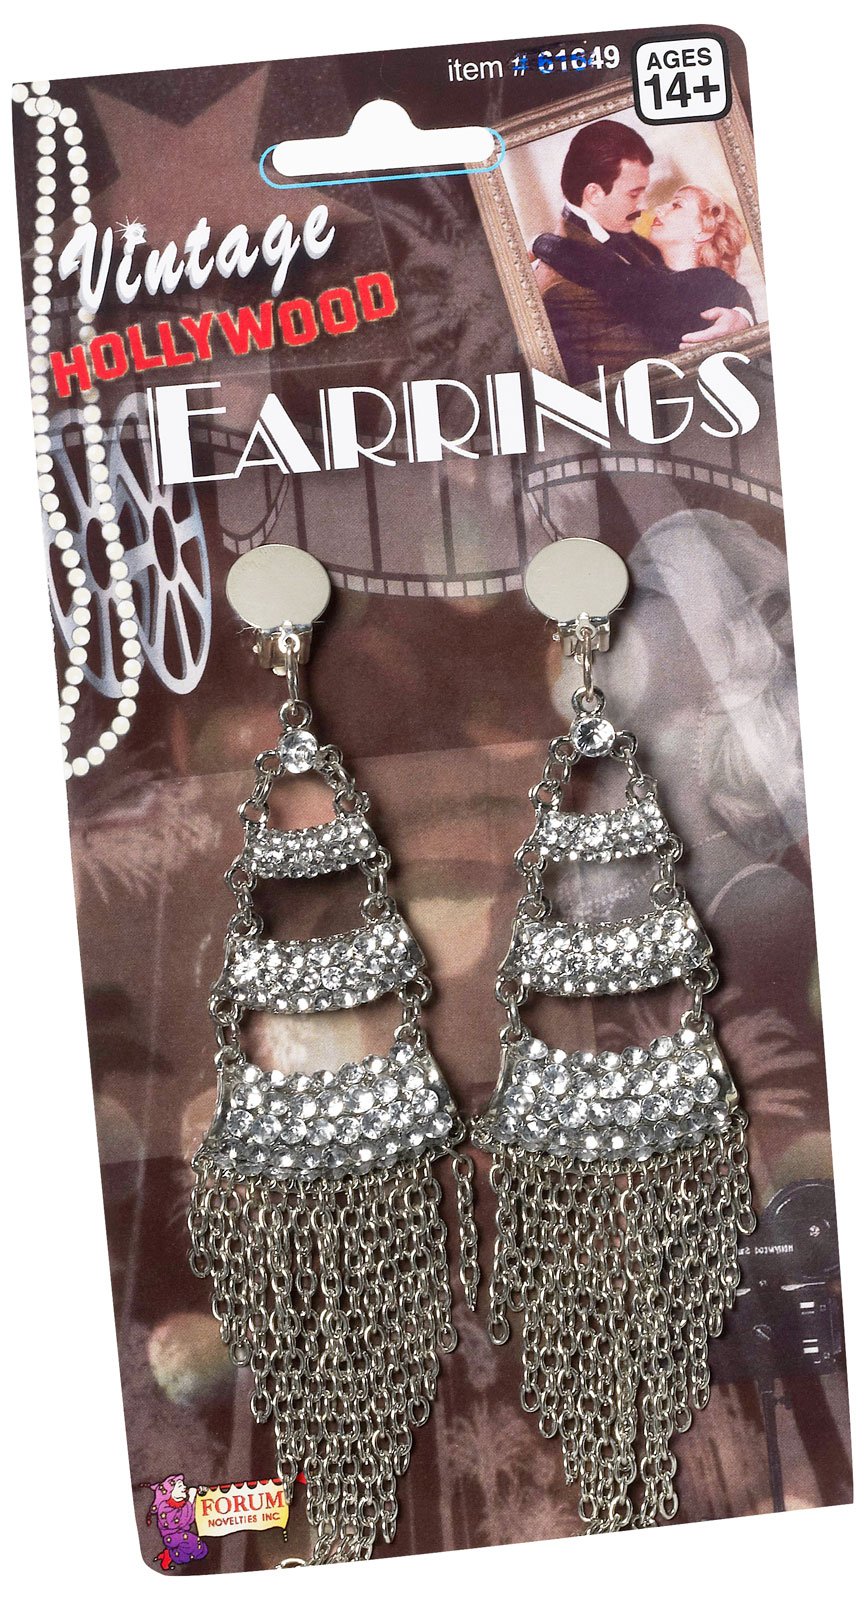 Vintage Hollywood Three Level Rhinestone Adult Earrings